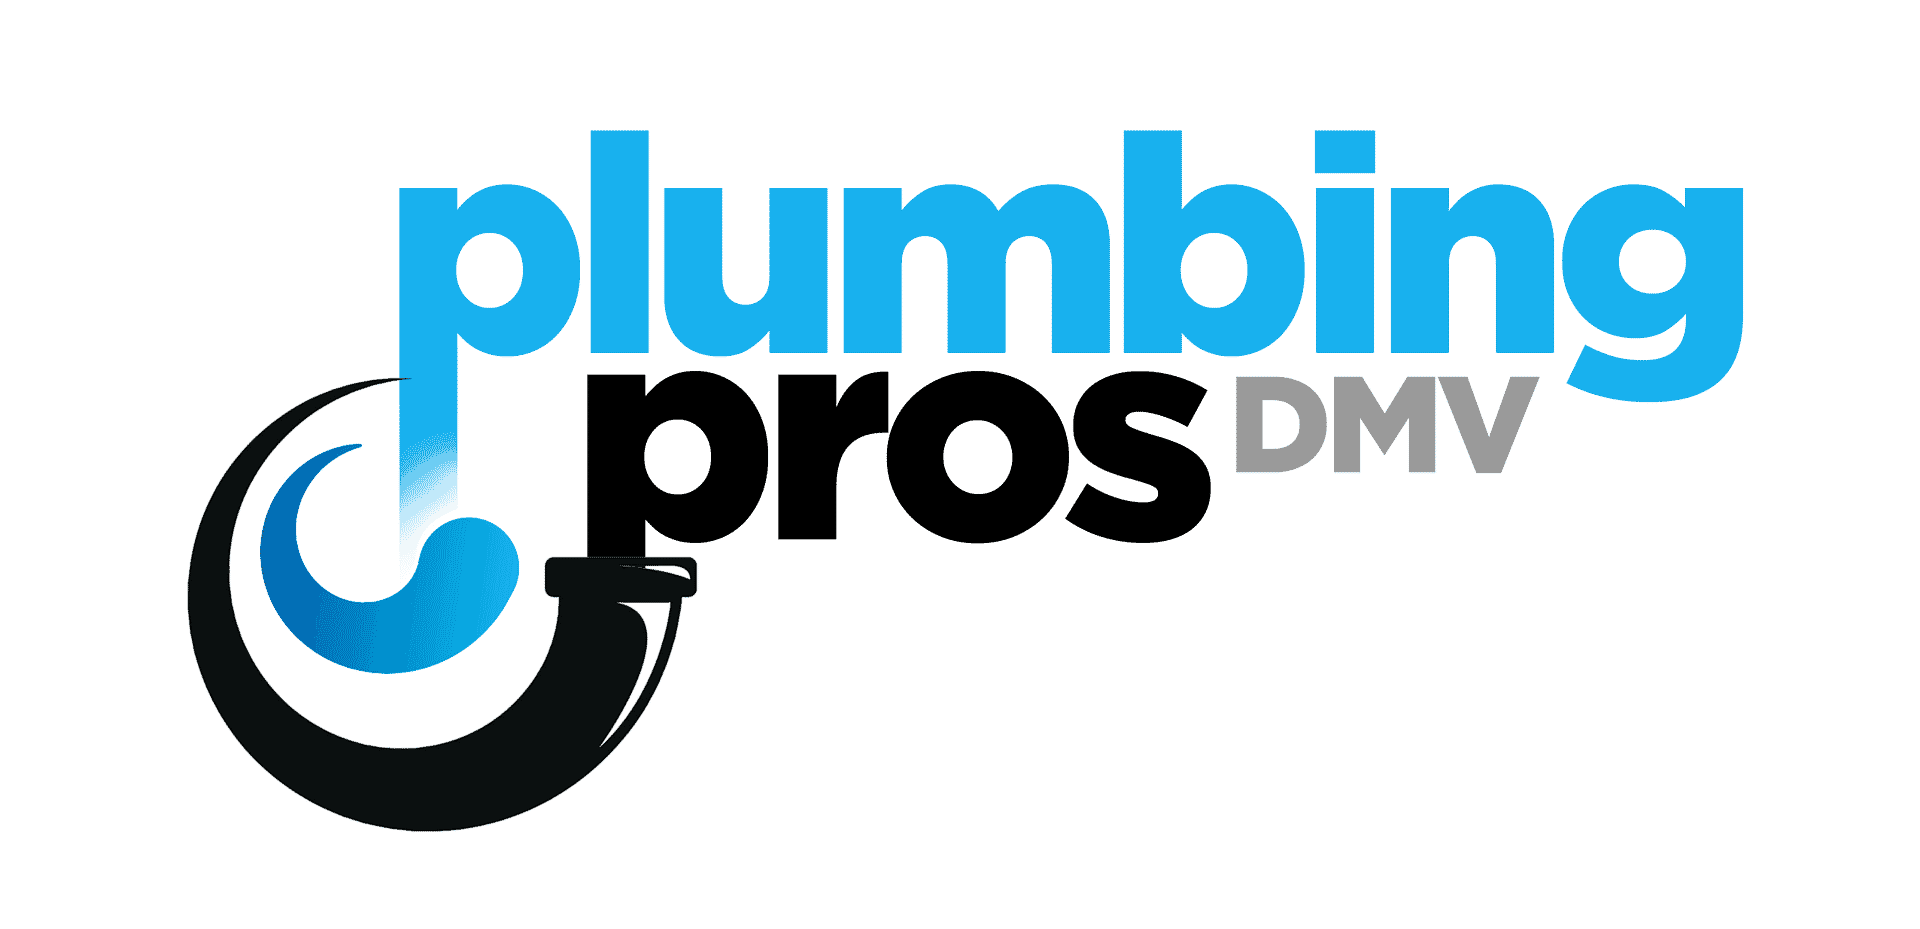 Plumbing Pros DMV in Gaithersburg, MD